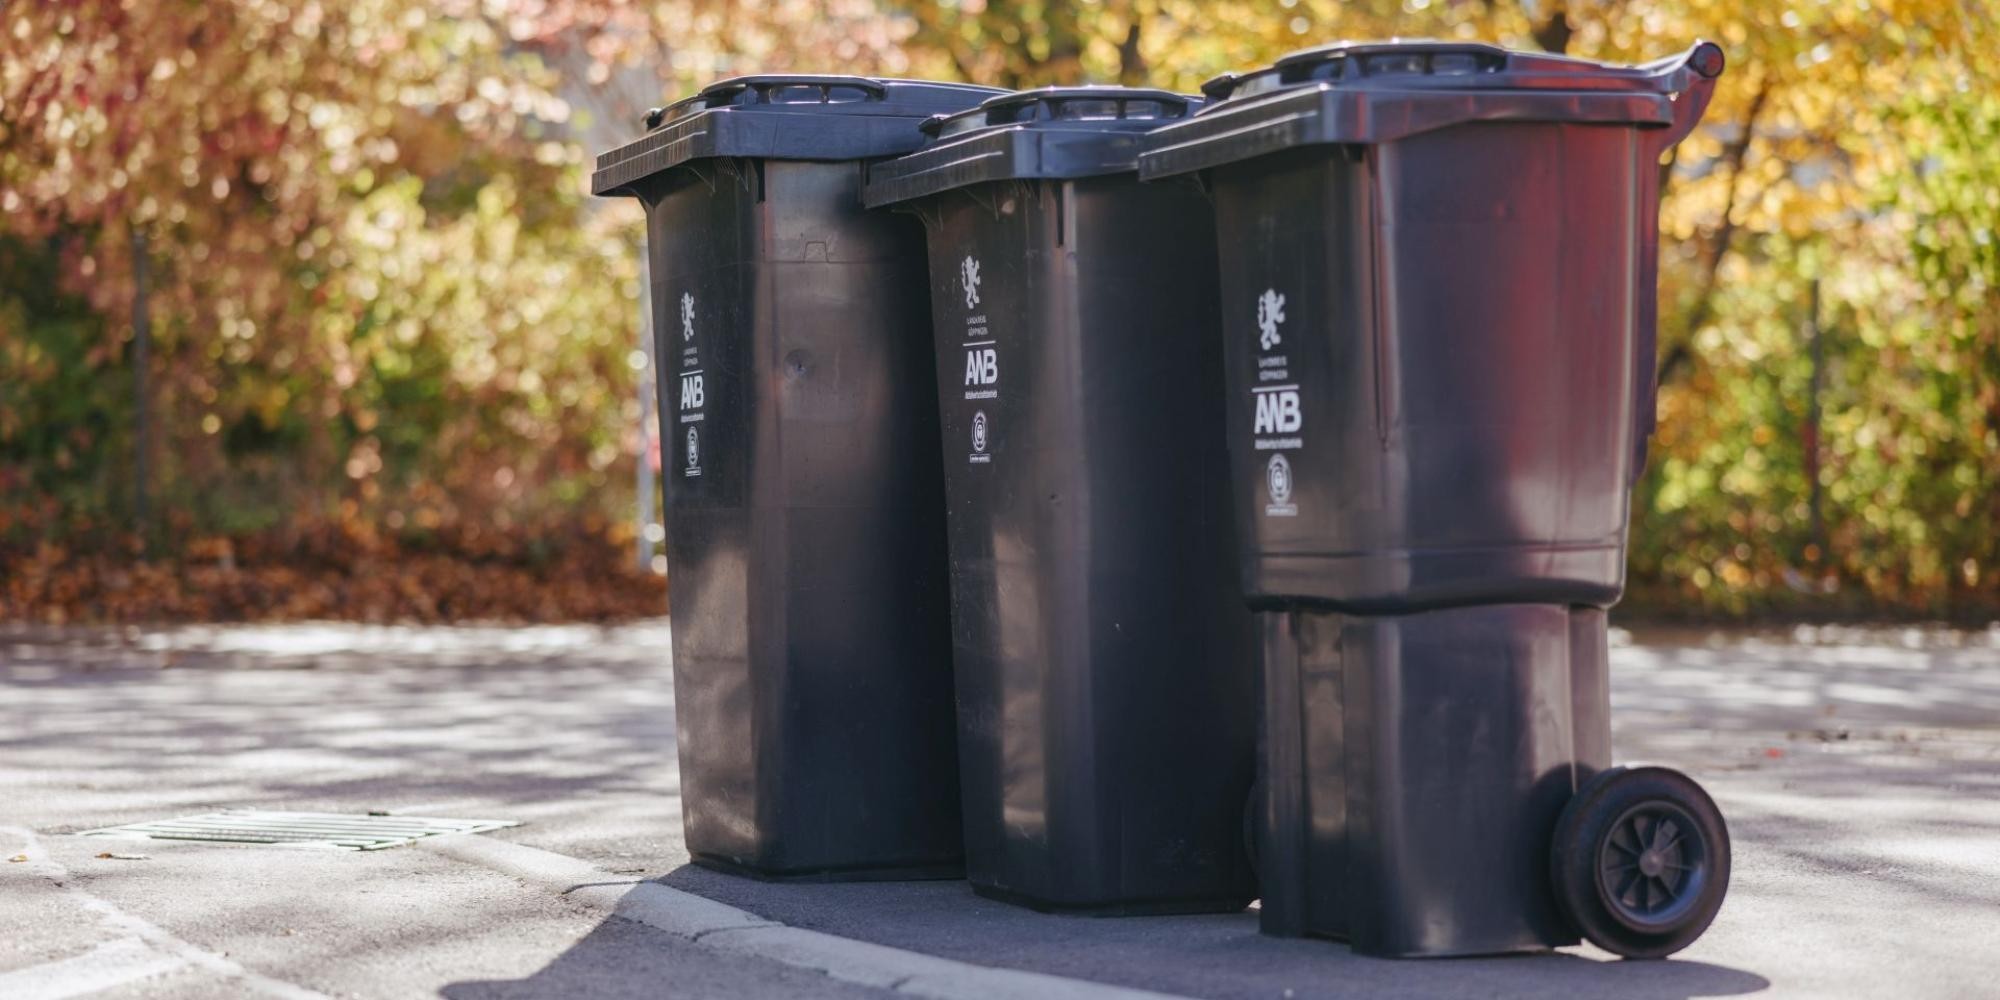 Drei Mülltonnen in unterschiedlichen Größen stehen am Straßenrand